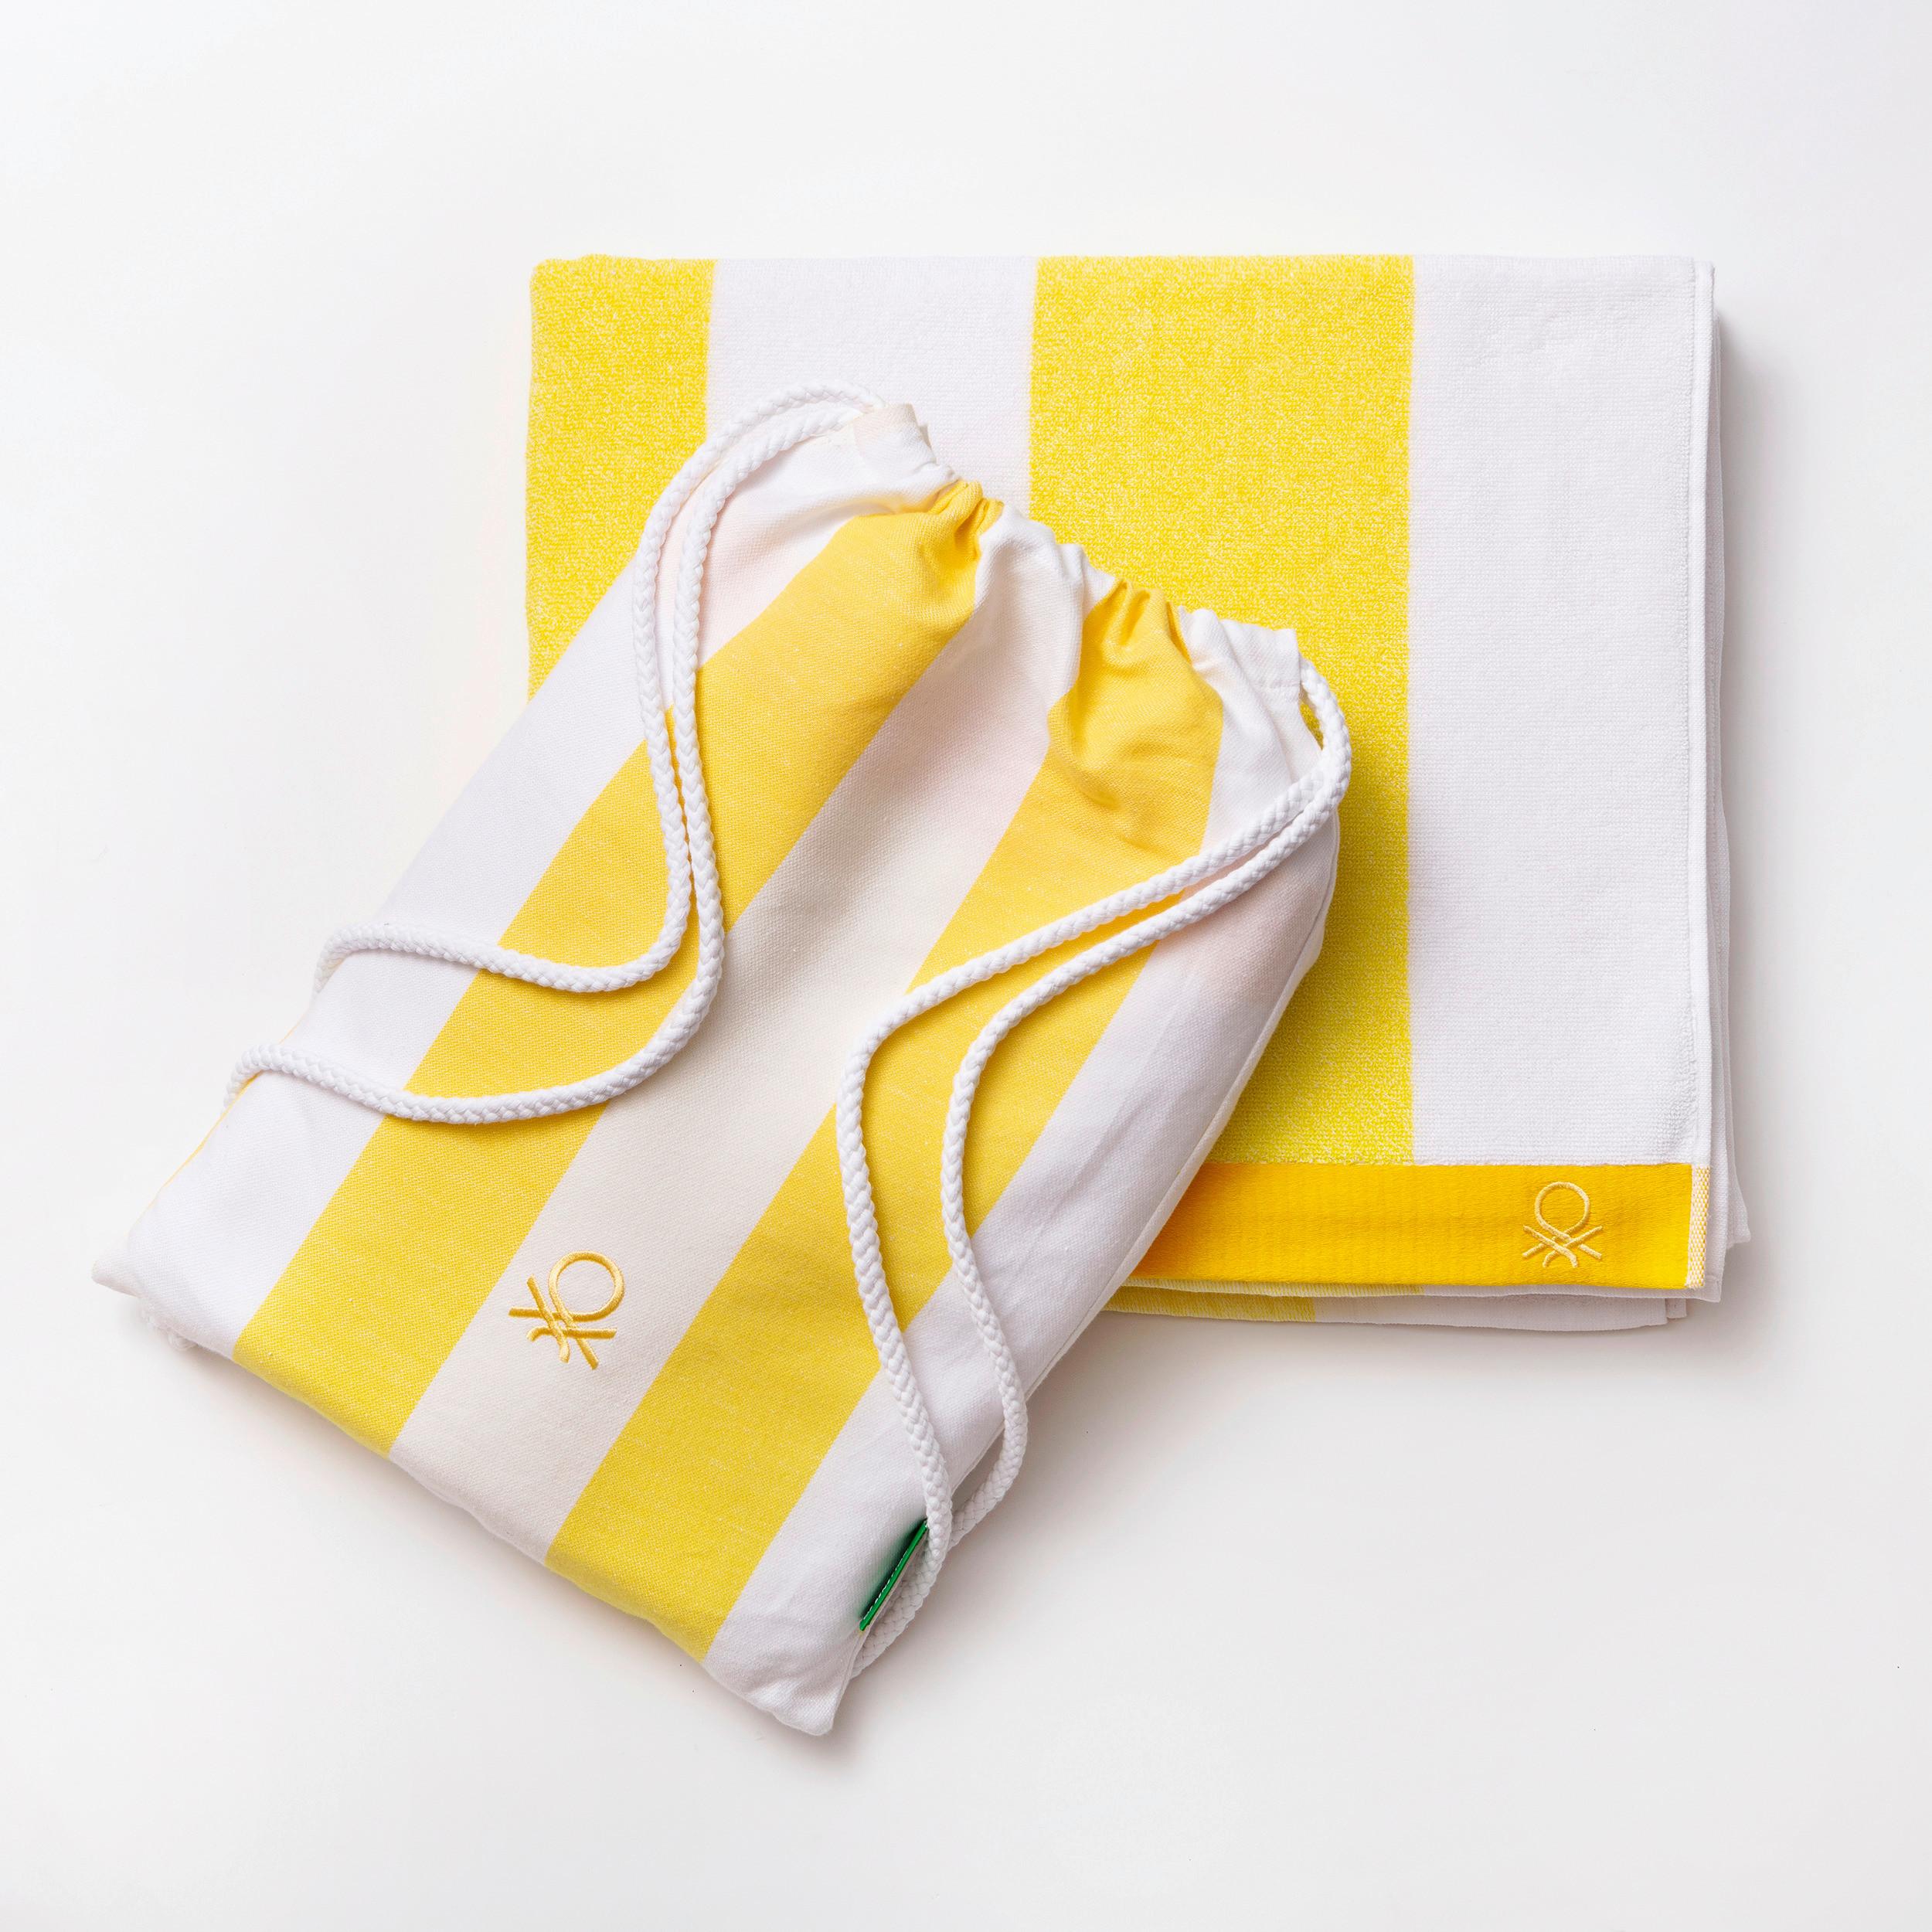 Strandtuch Baumwolle Gelb/Weiß Gestreift 90x160 cm - Gelb/Weiß, Basics, Textil (90/160cm) - Benetton